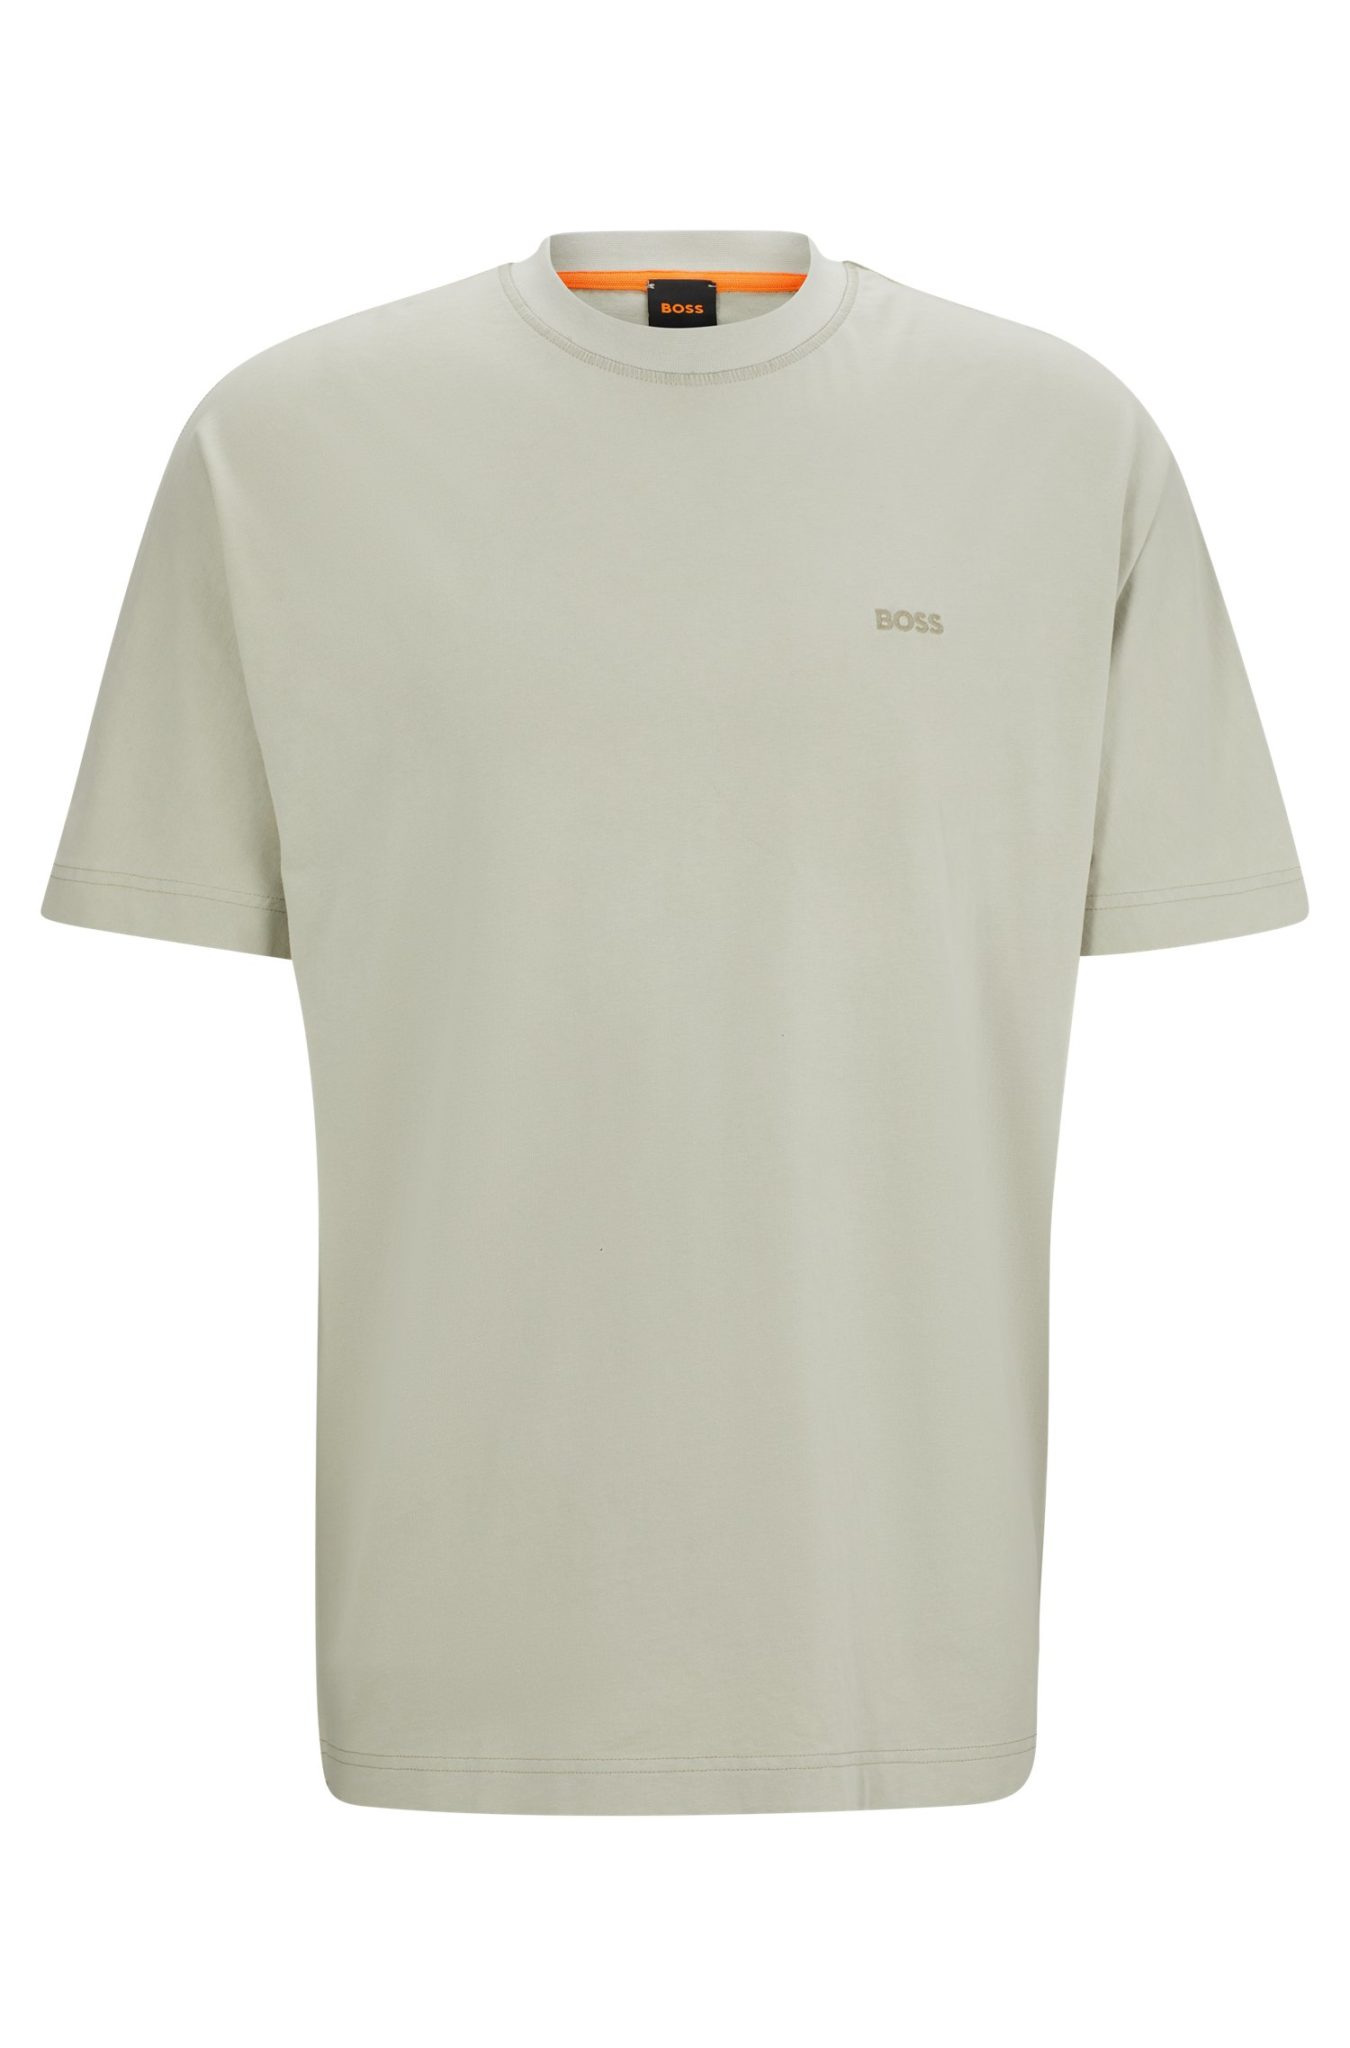 Hugo Boss T-shirt Relaxed Fit en coton pur à logo brodé